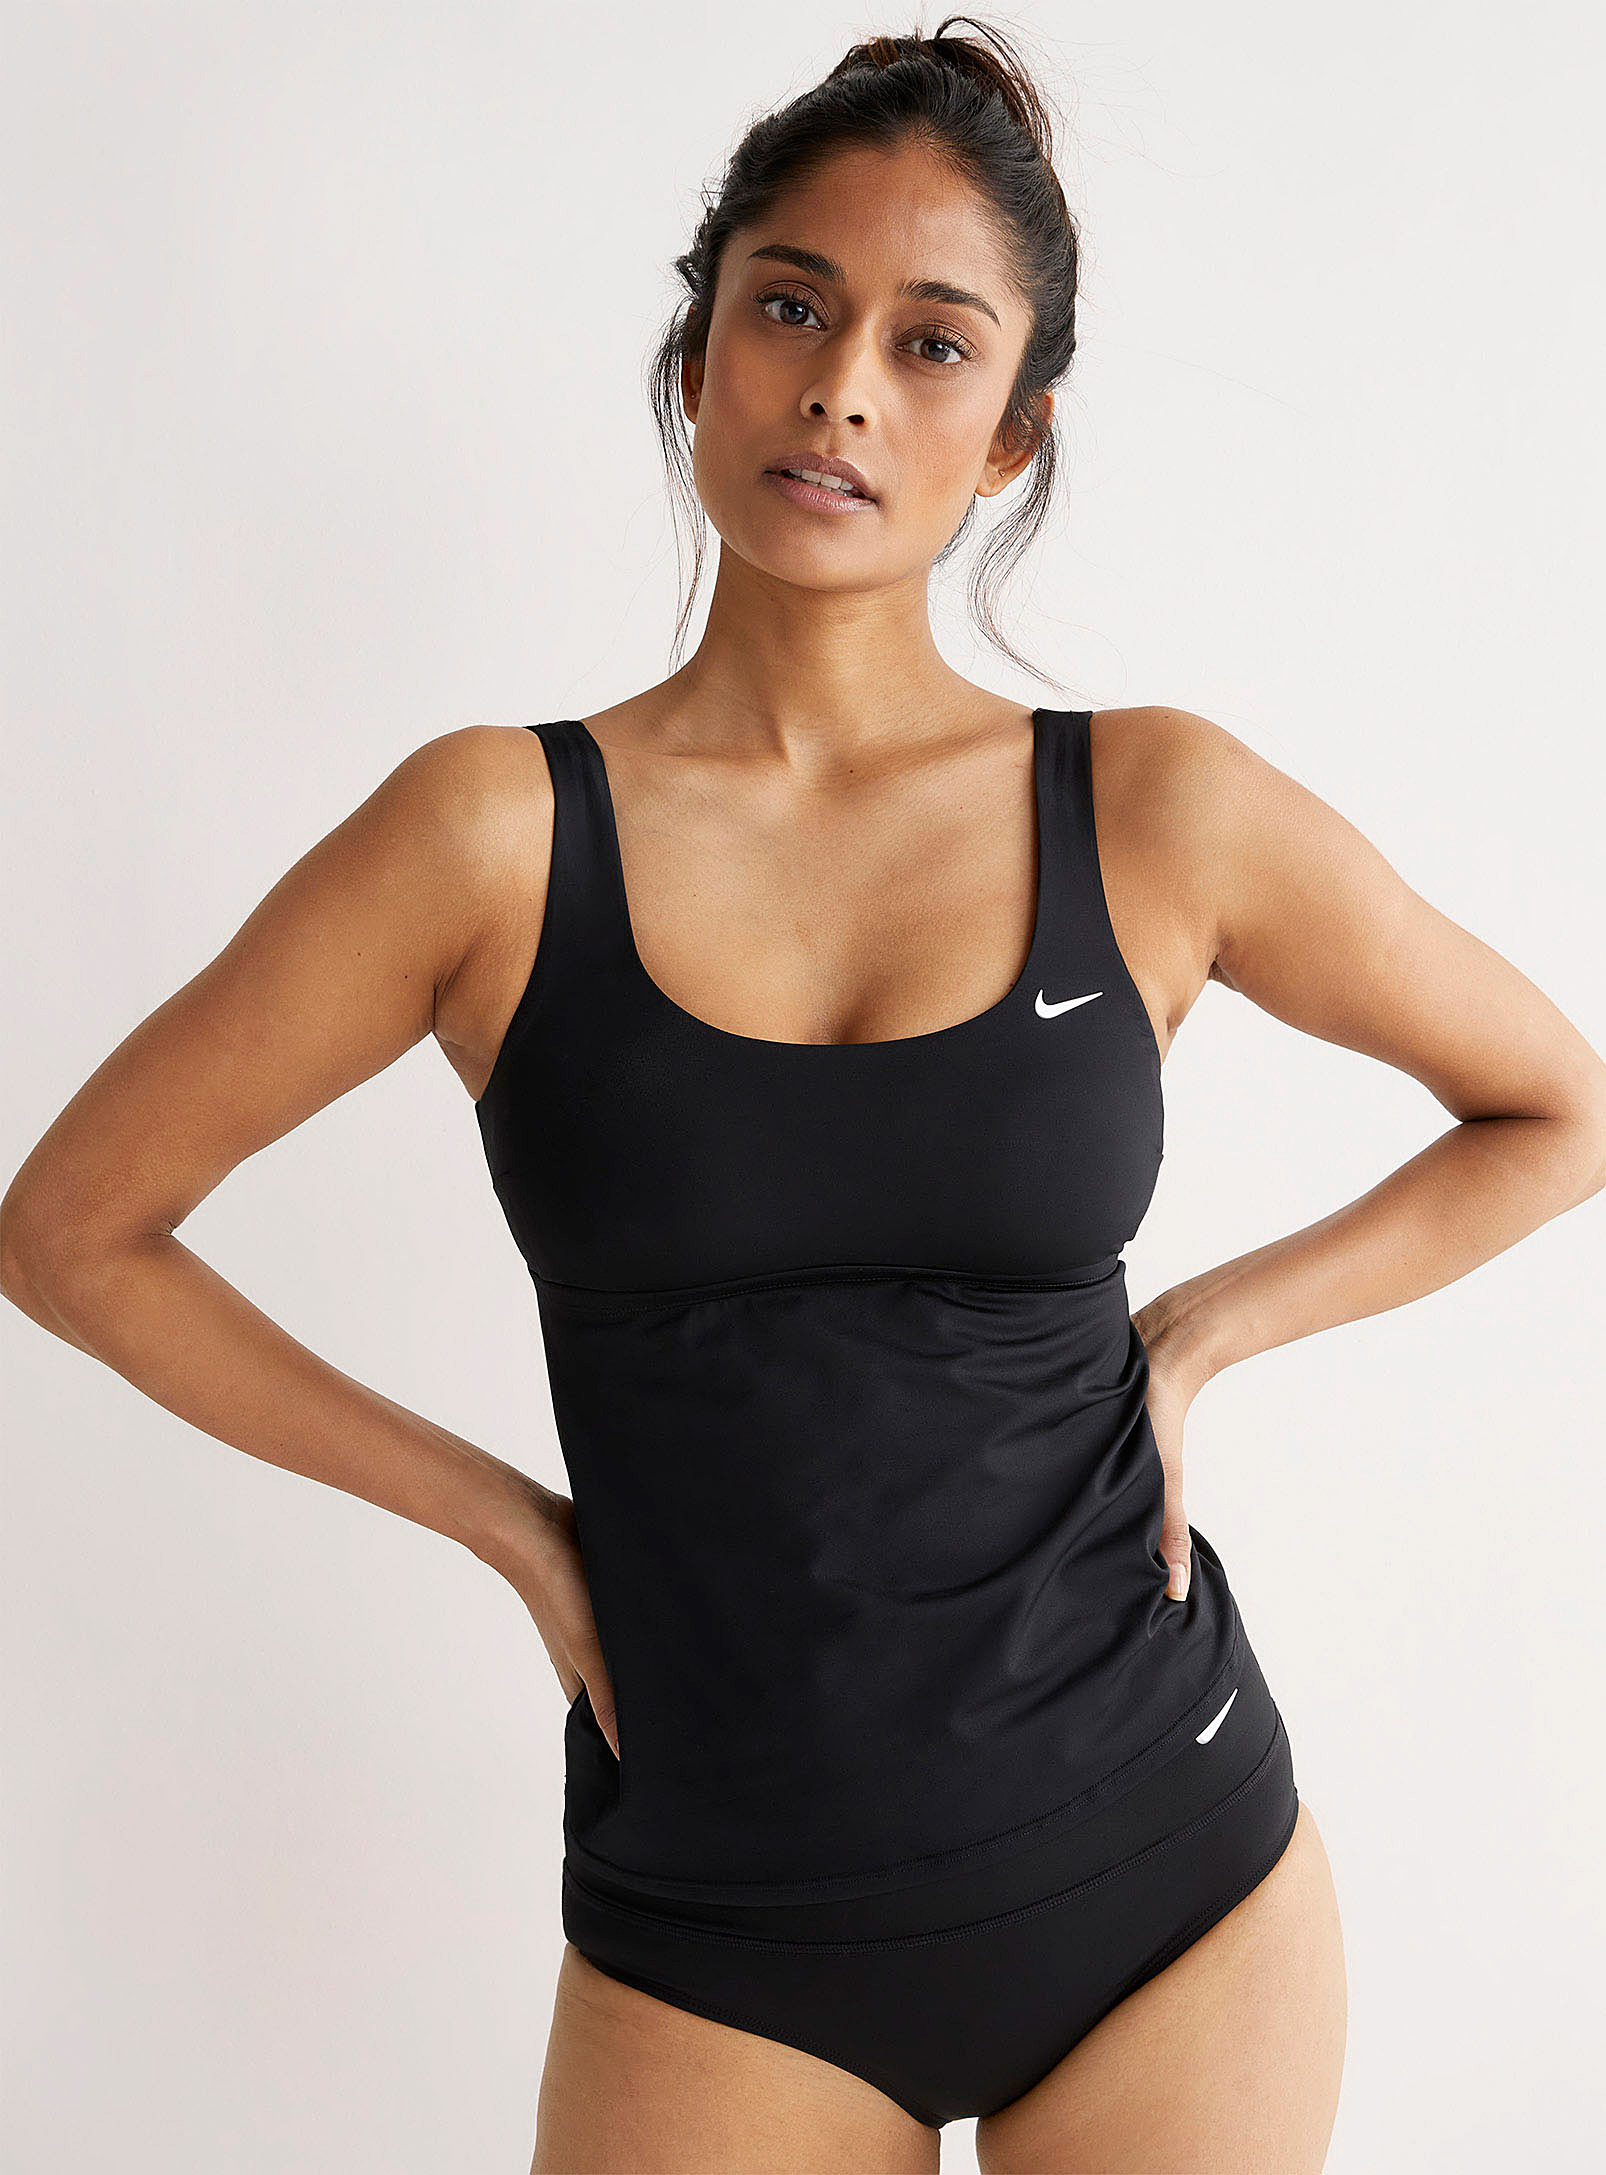 Nike - Le tankini athlétique